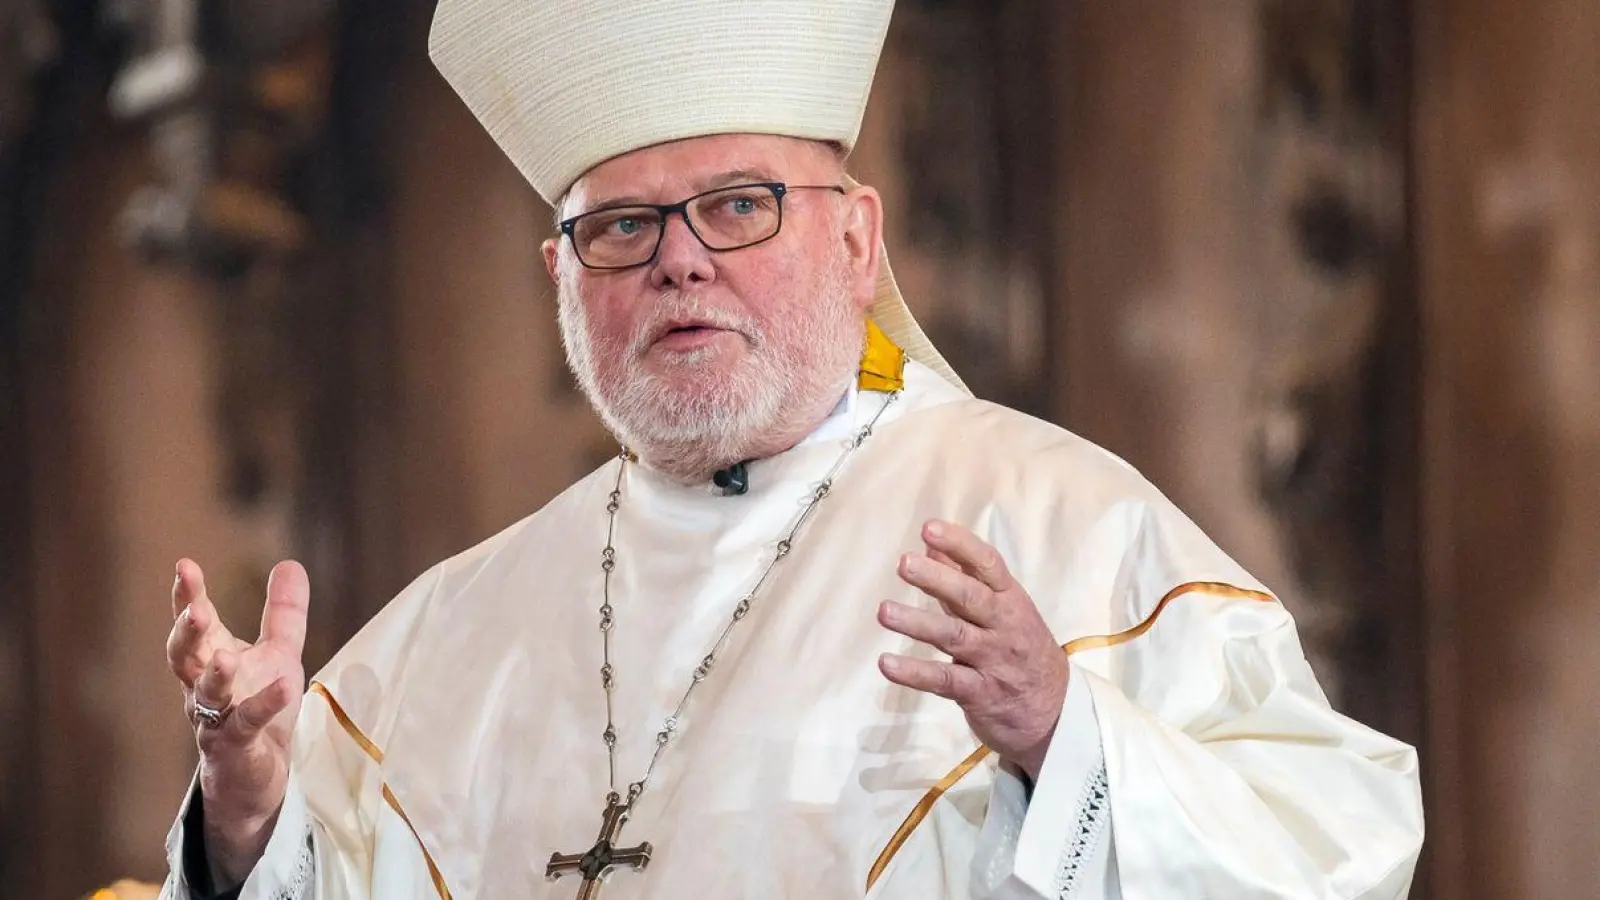 Reinhard Kardinal Marx, Erzbischof von München und Freising. (Foto: Daniel Vogl/dpa)